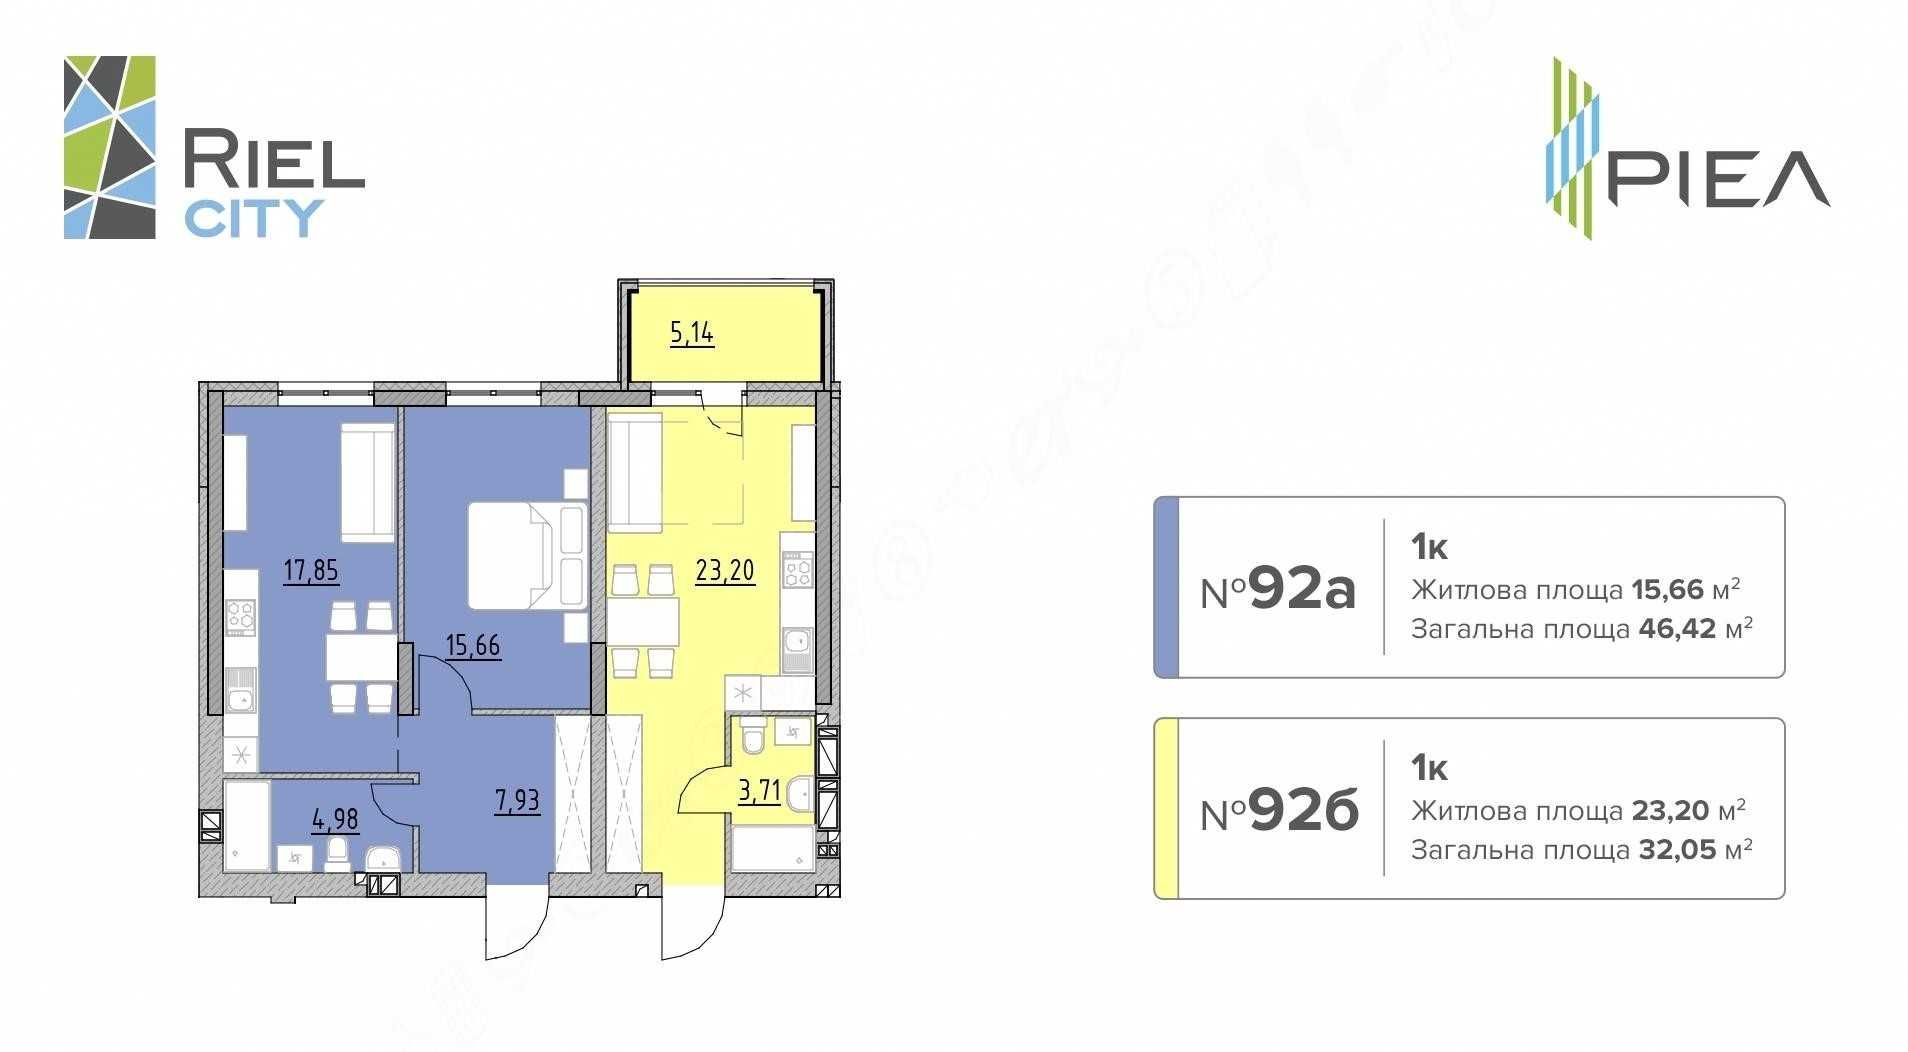 Поділена квартира в ЖК (Ріел Сіті) 78.4м.кв. Готова новобудова